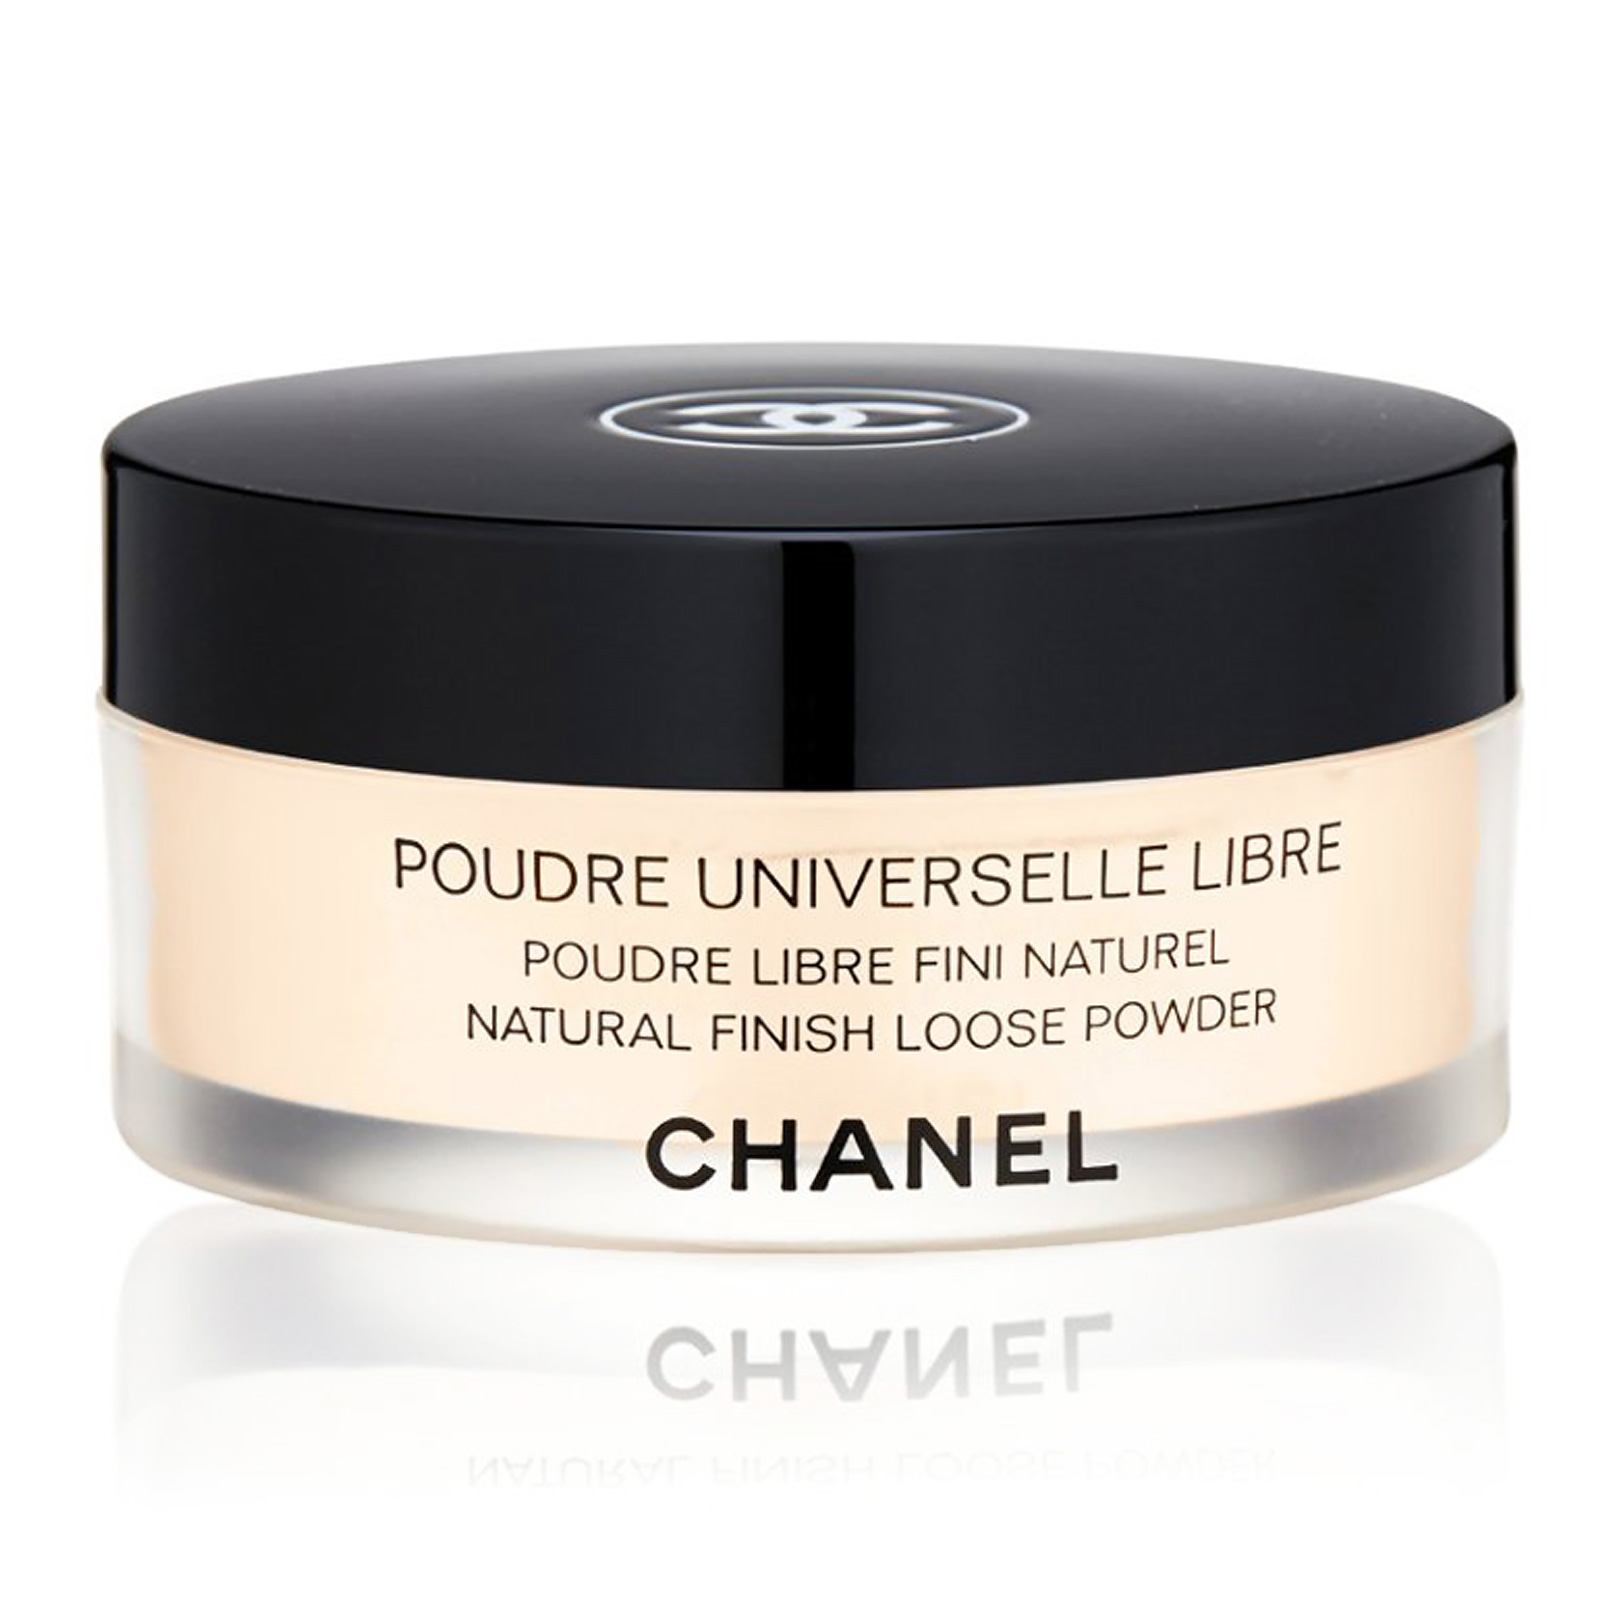 Mua Phấn Phủ Dạng Bột Chanel Poudre Universelle Libre Tone 12, 30g - Chanel  - Mua tại Vua Hàng Hiệu h091223